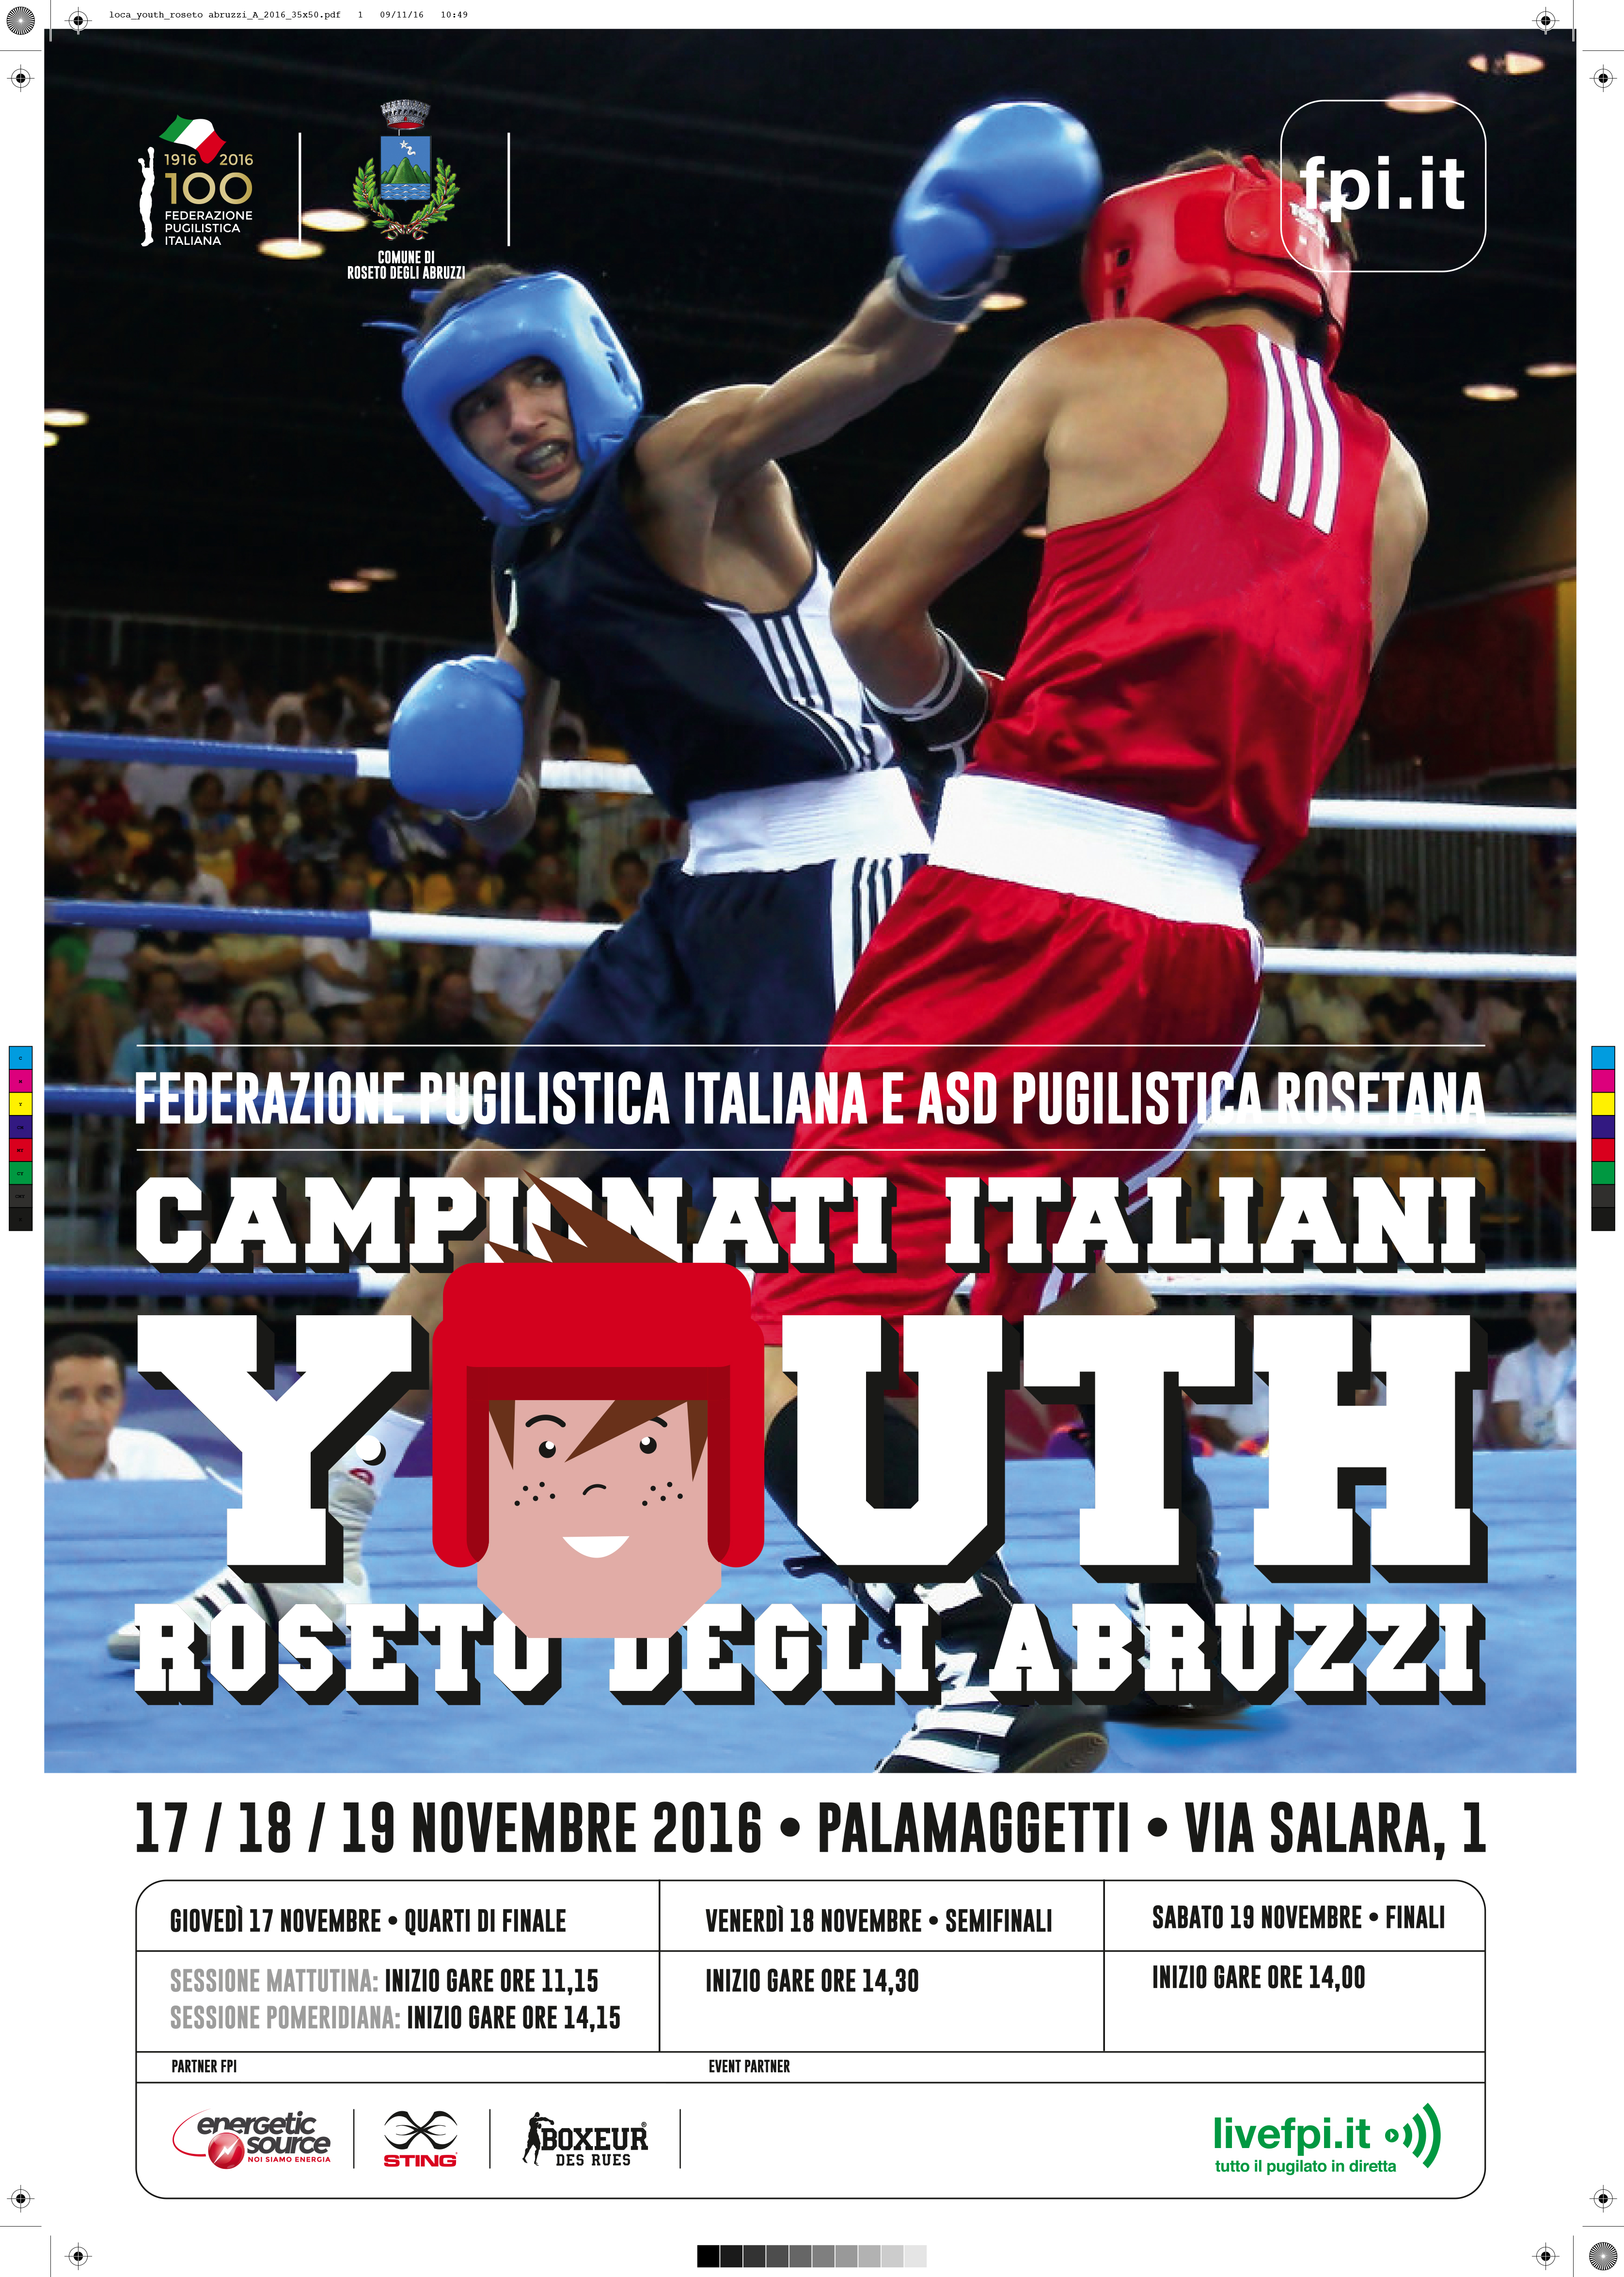 2 Giorni al Via dei Campionati Italiani Youth 2016 Roseto Degli Abruzzi - Info e cartella Stampa #Youth2016